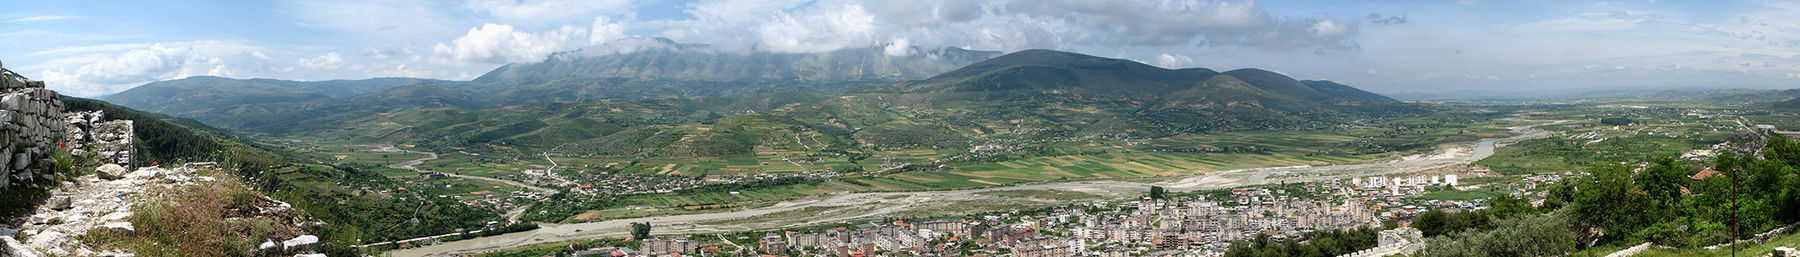 Albanien banner.jpg